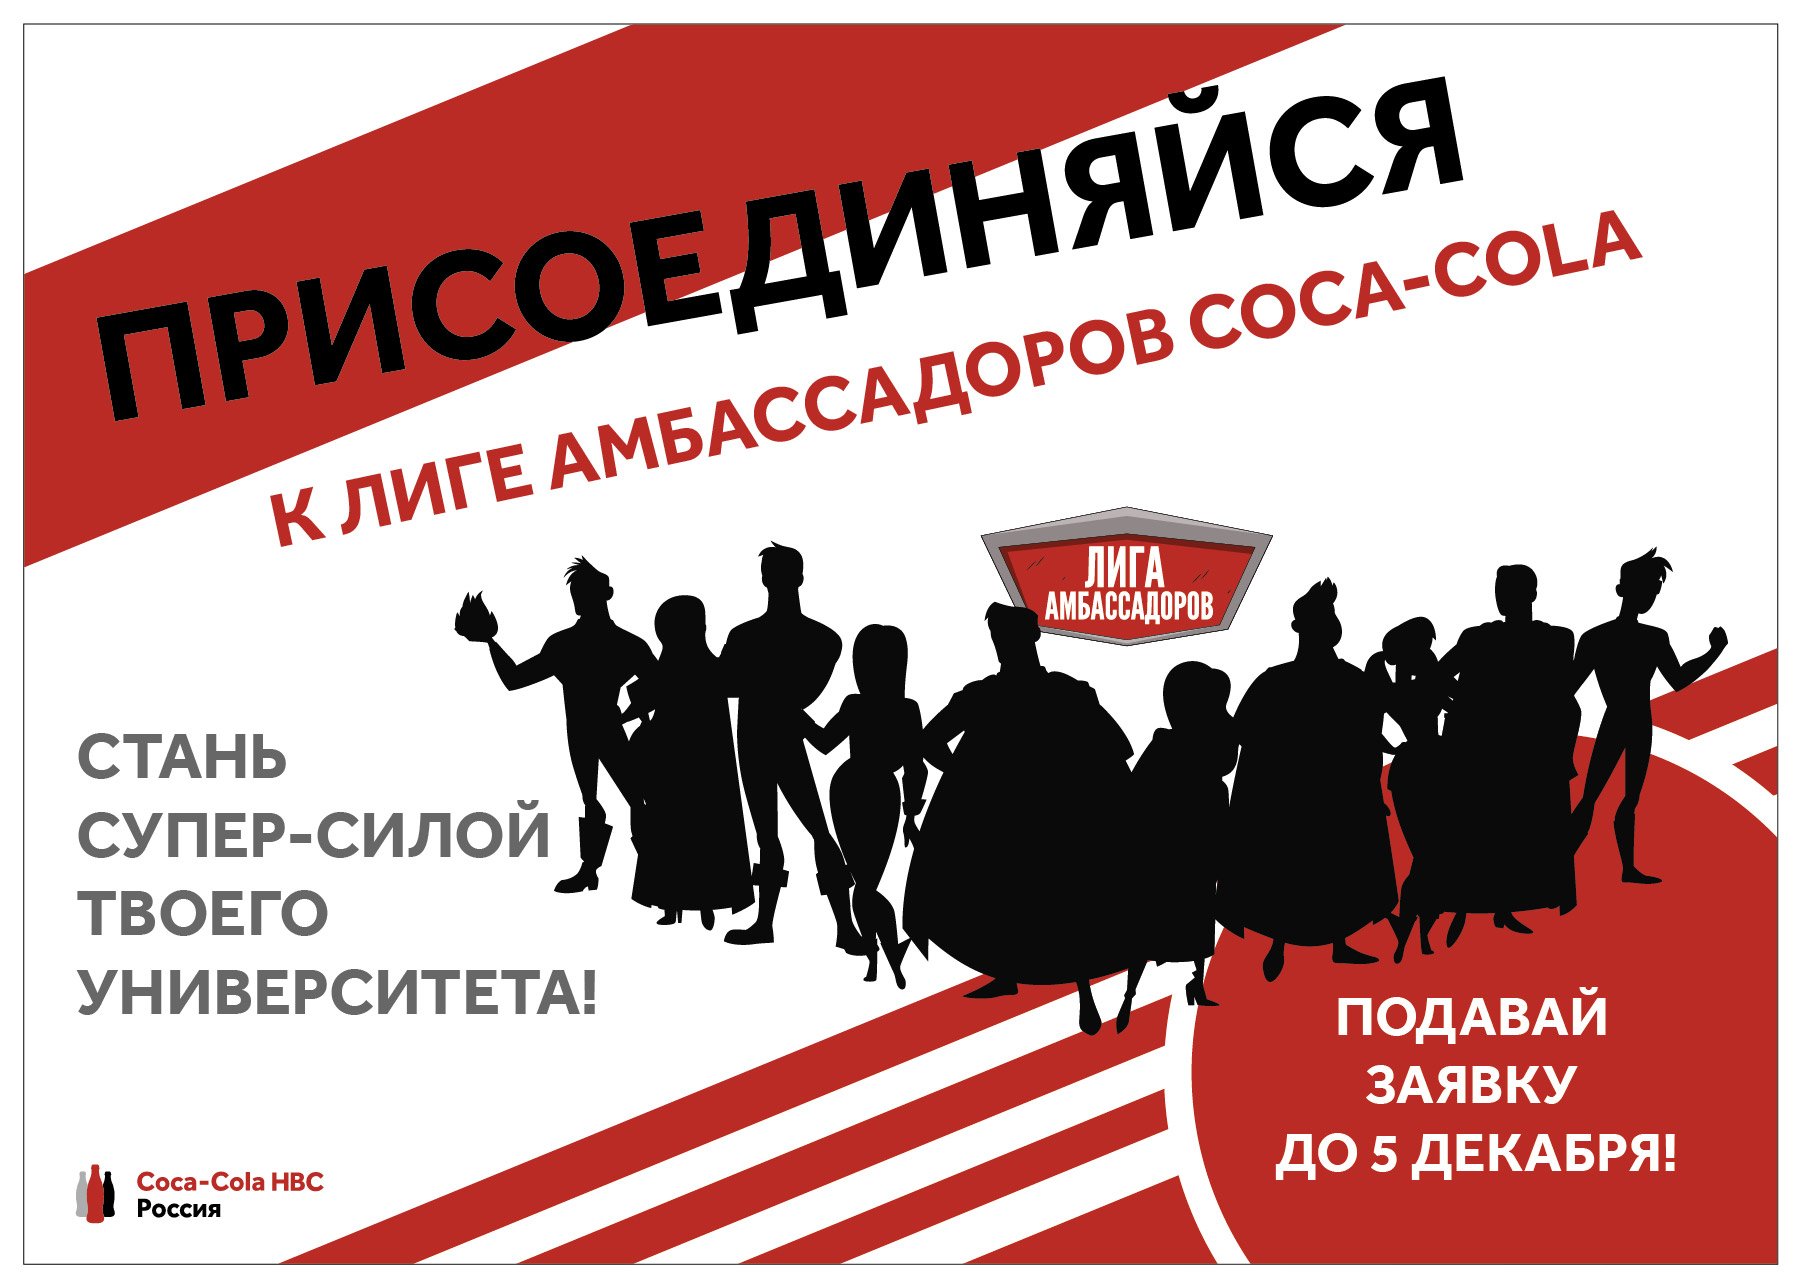 Coca-Cola HBC Россия создает «Лигу амбассадоров» среди студентов